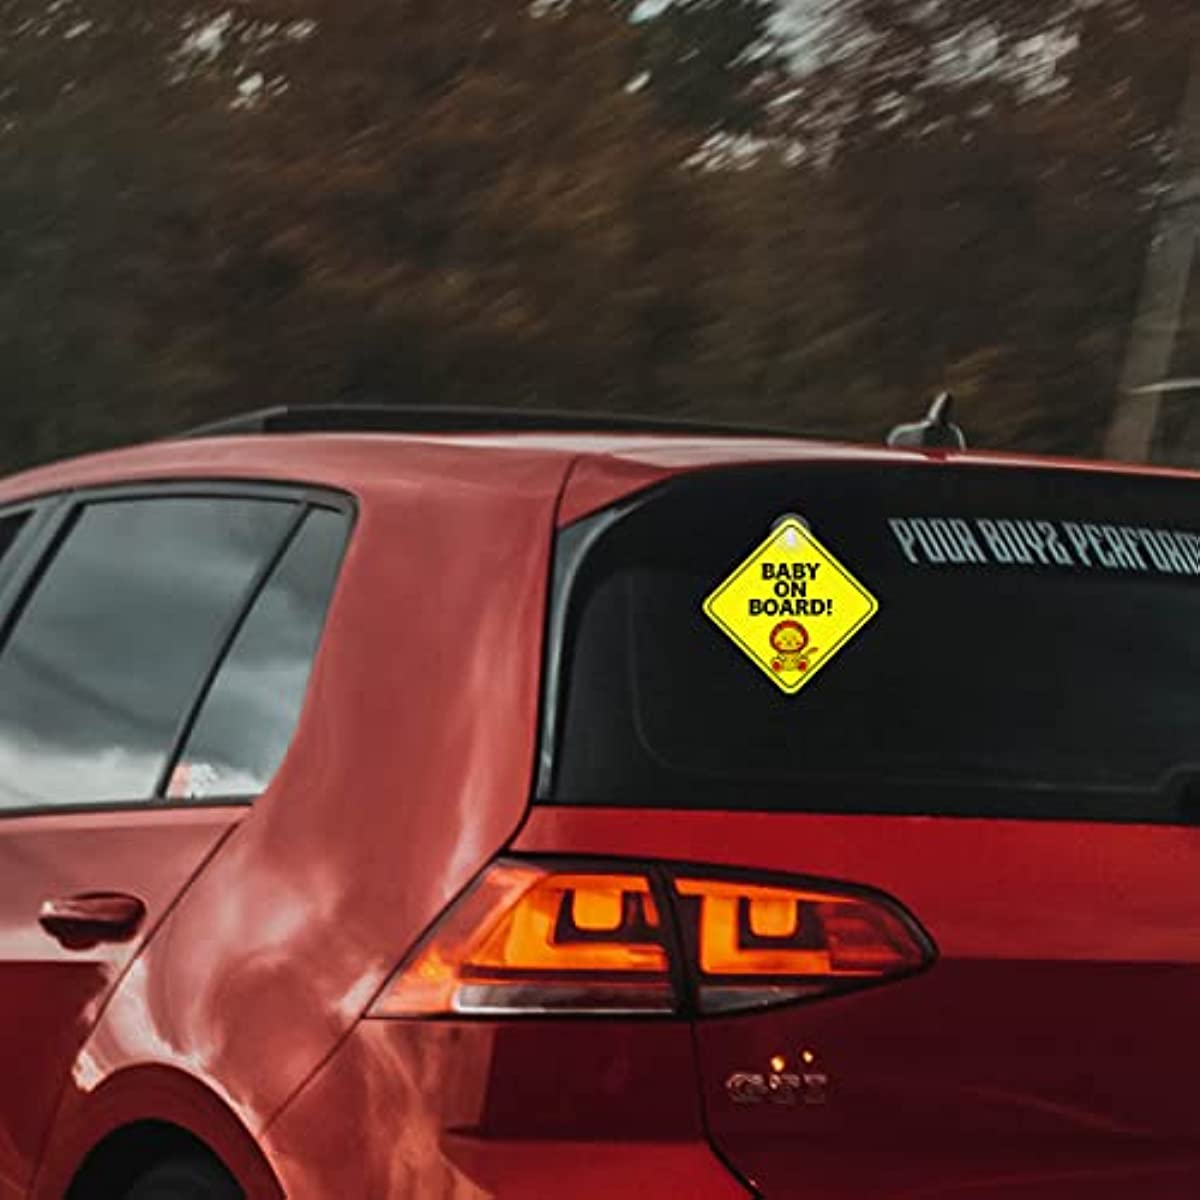 2pcs bébé à bord voiture avertissement décalque mignon jaune autocollant  avec ventouse en silicone pour panneau d'avertissement de voiture